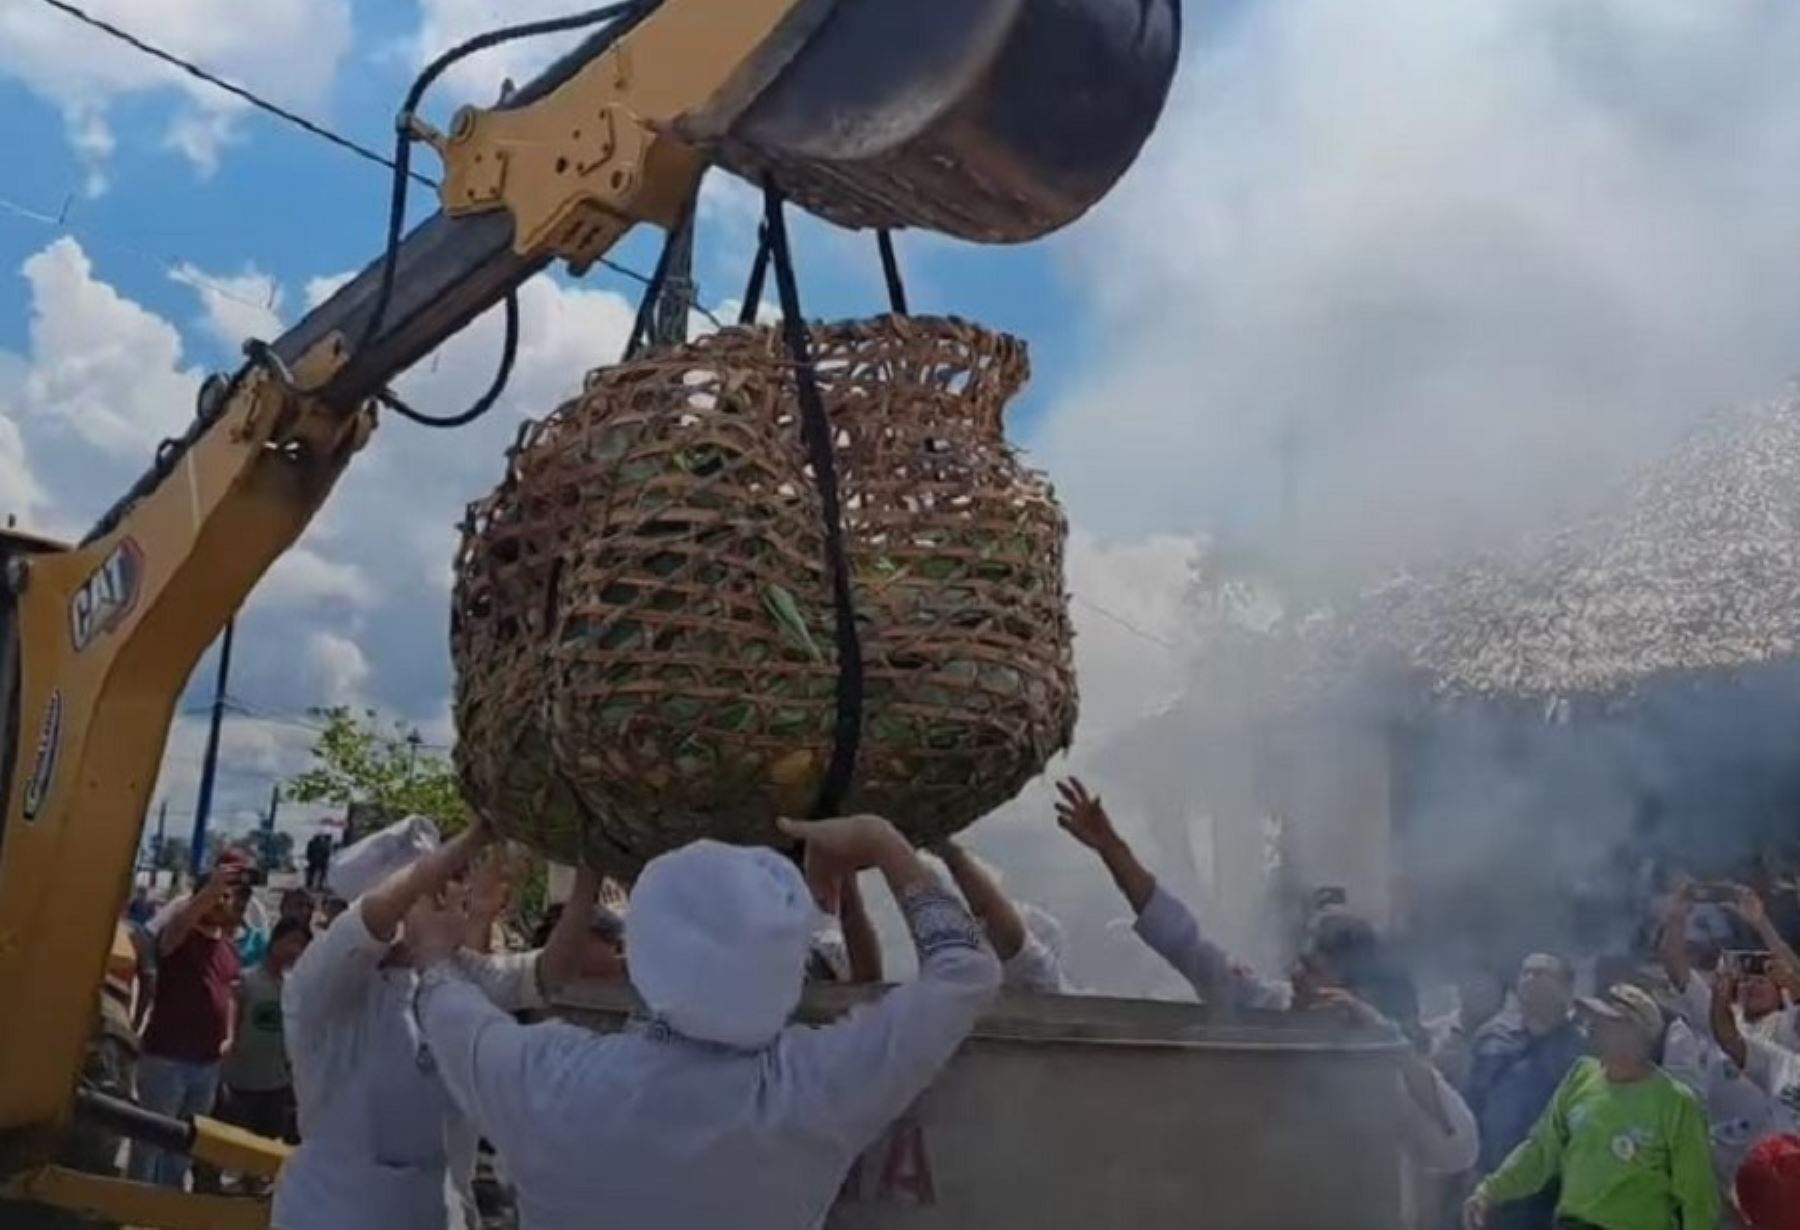 Un gigantesco juane de 500 kilos, el potaje más emblemático de la Amazonía peruana fue preparado y degustado por una multitud de personas como parte de la celebración de la Fiesta de San Juan en la ciudad de Iquitos, capital de la región Loreto.